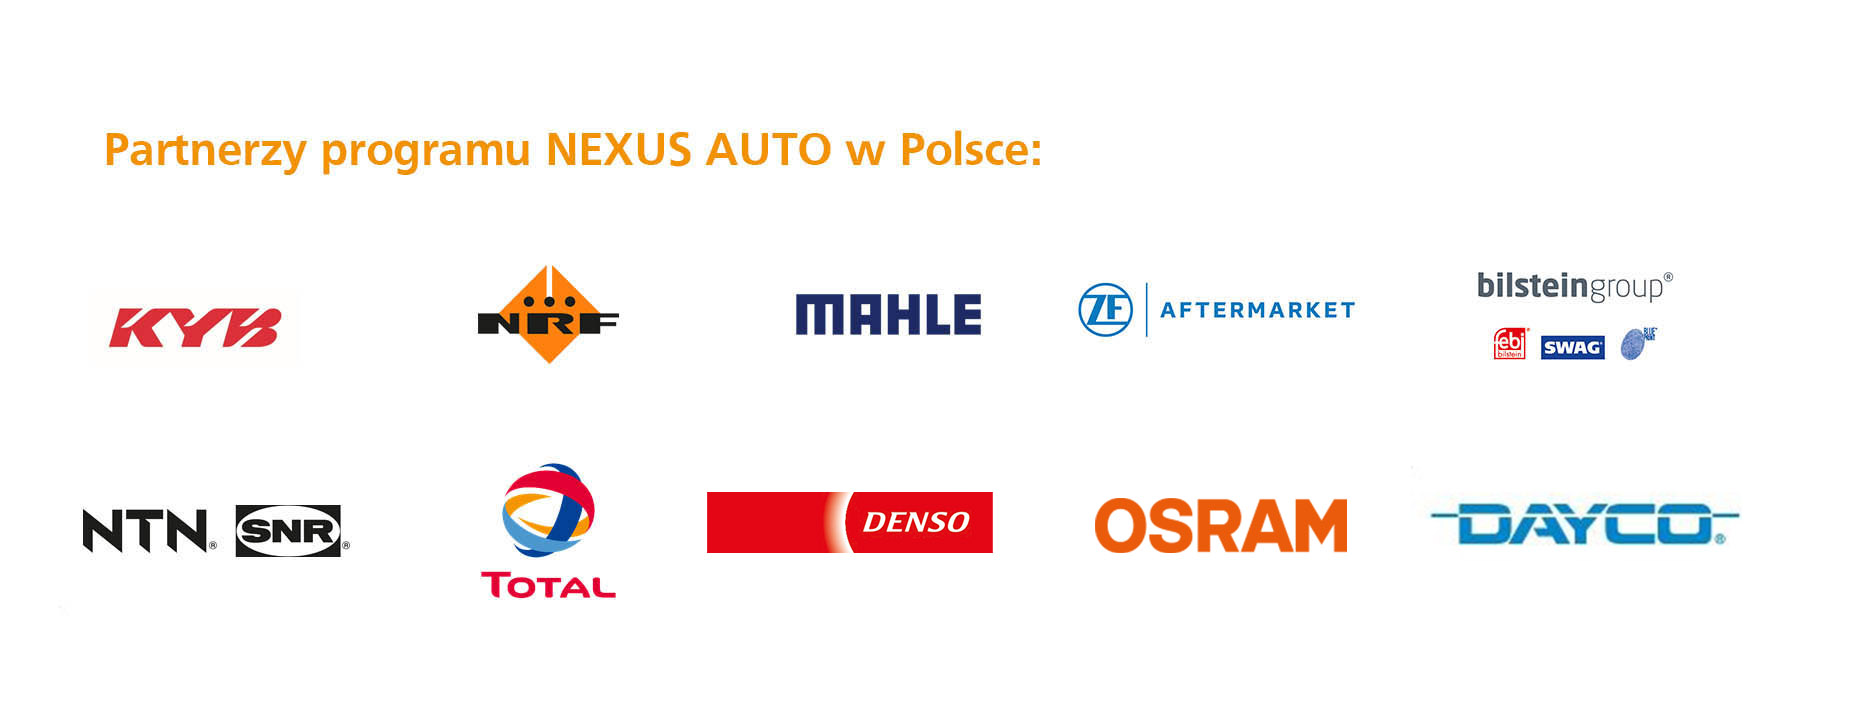 Partnerzy programu NEXUS AUTO w Polsce